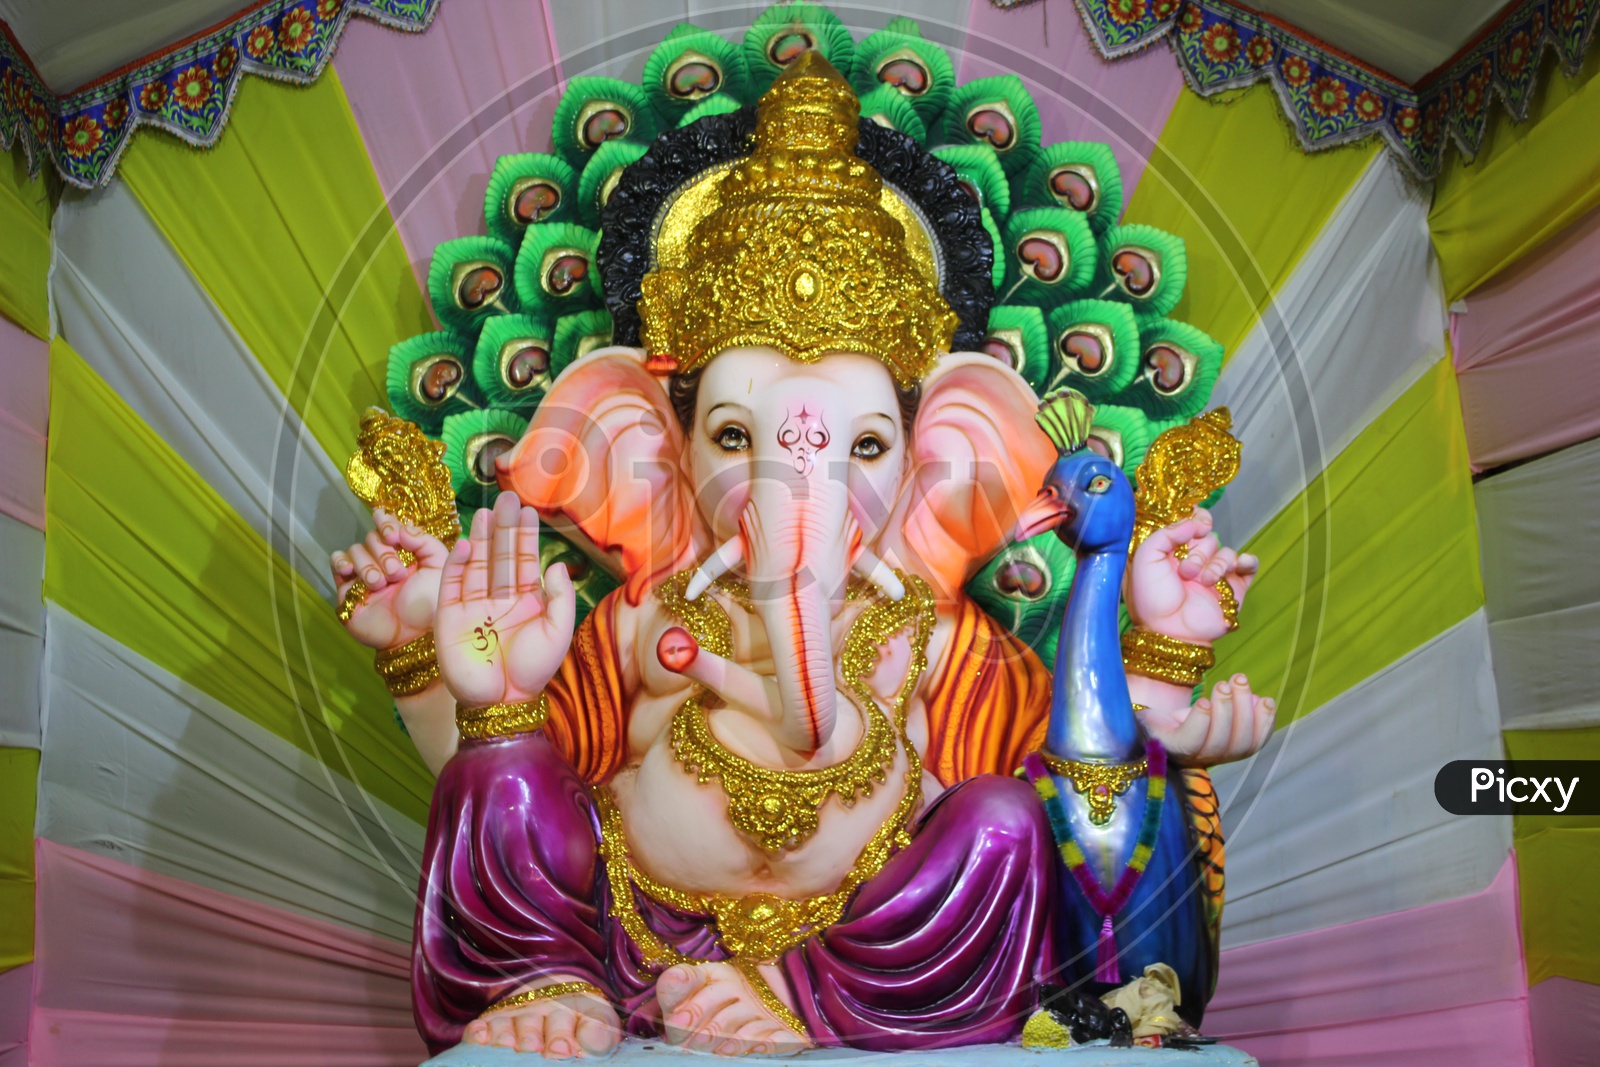 Lord Ganesh or Ganapathi idol